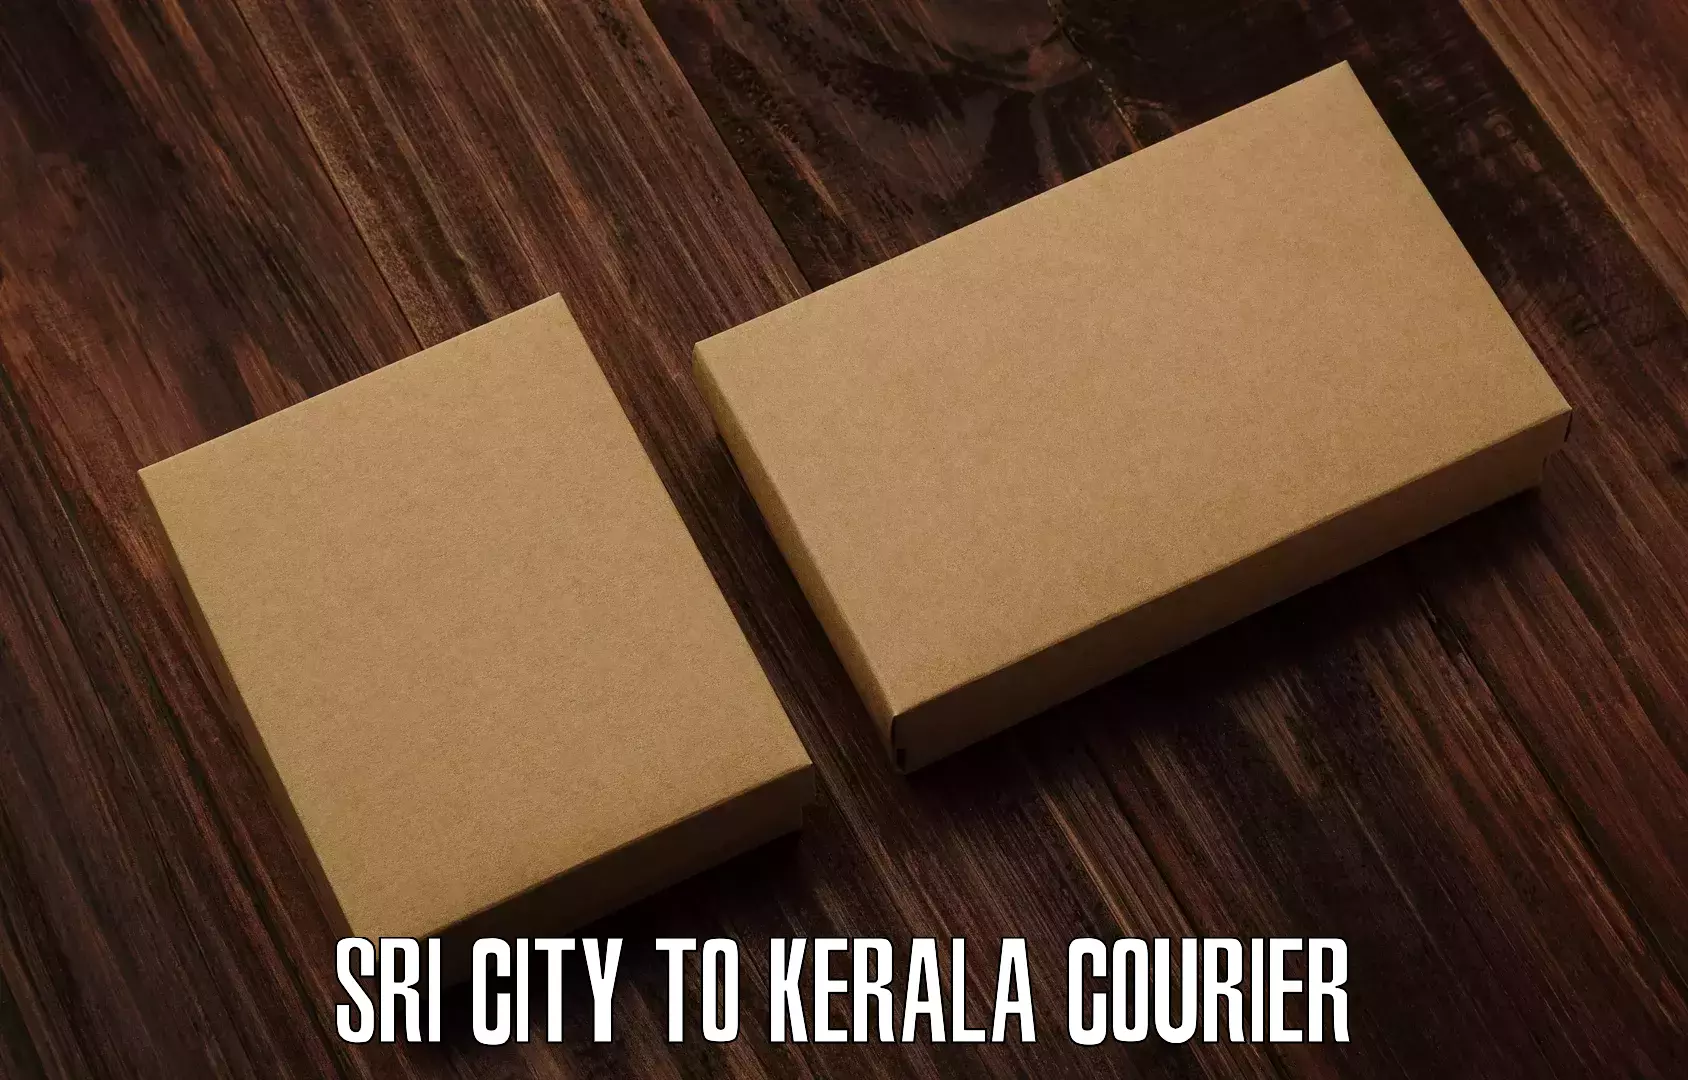 Quick dispatch service Sri City to Cochin